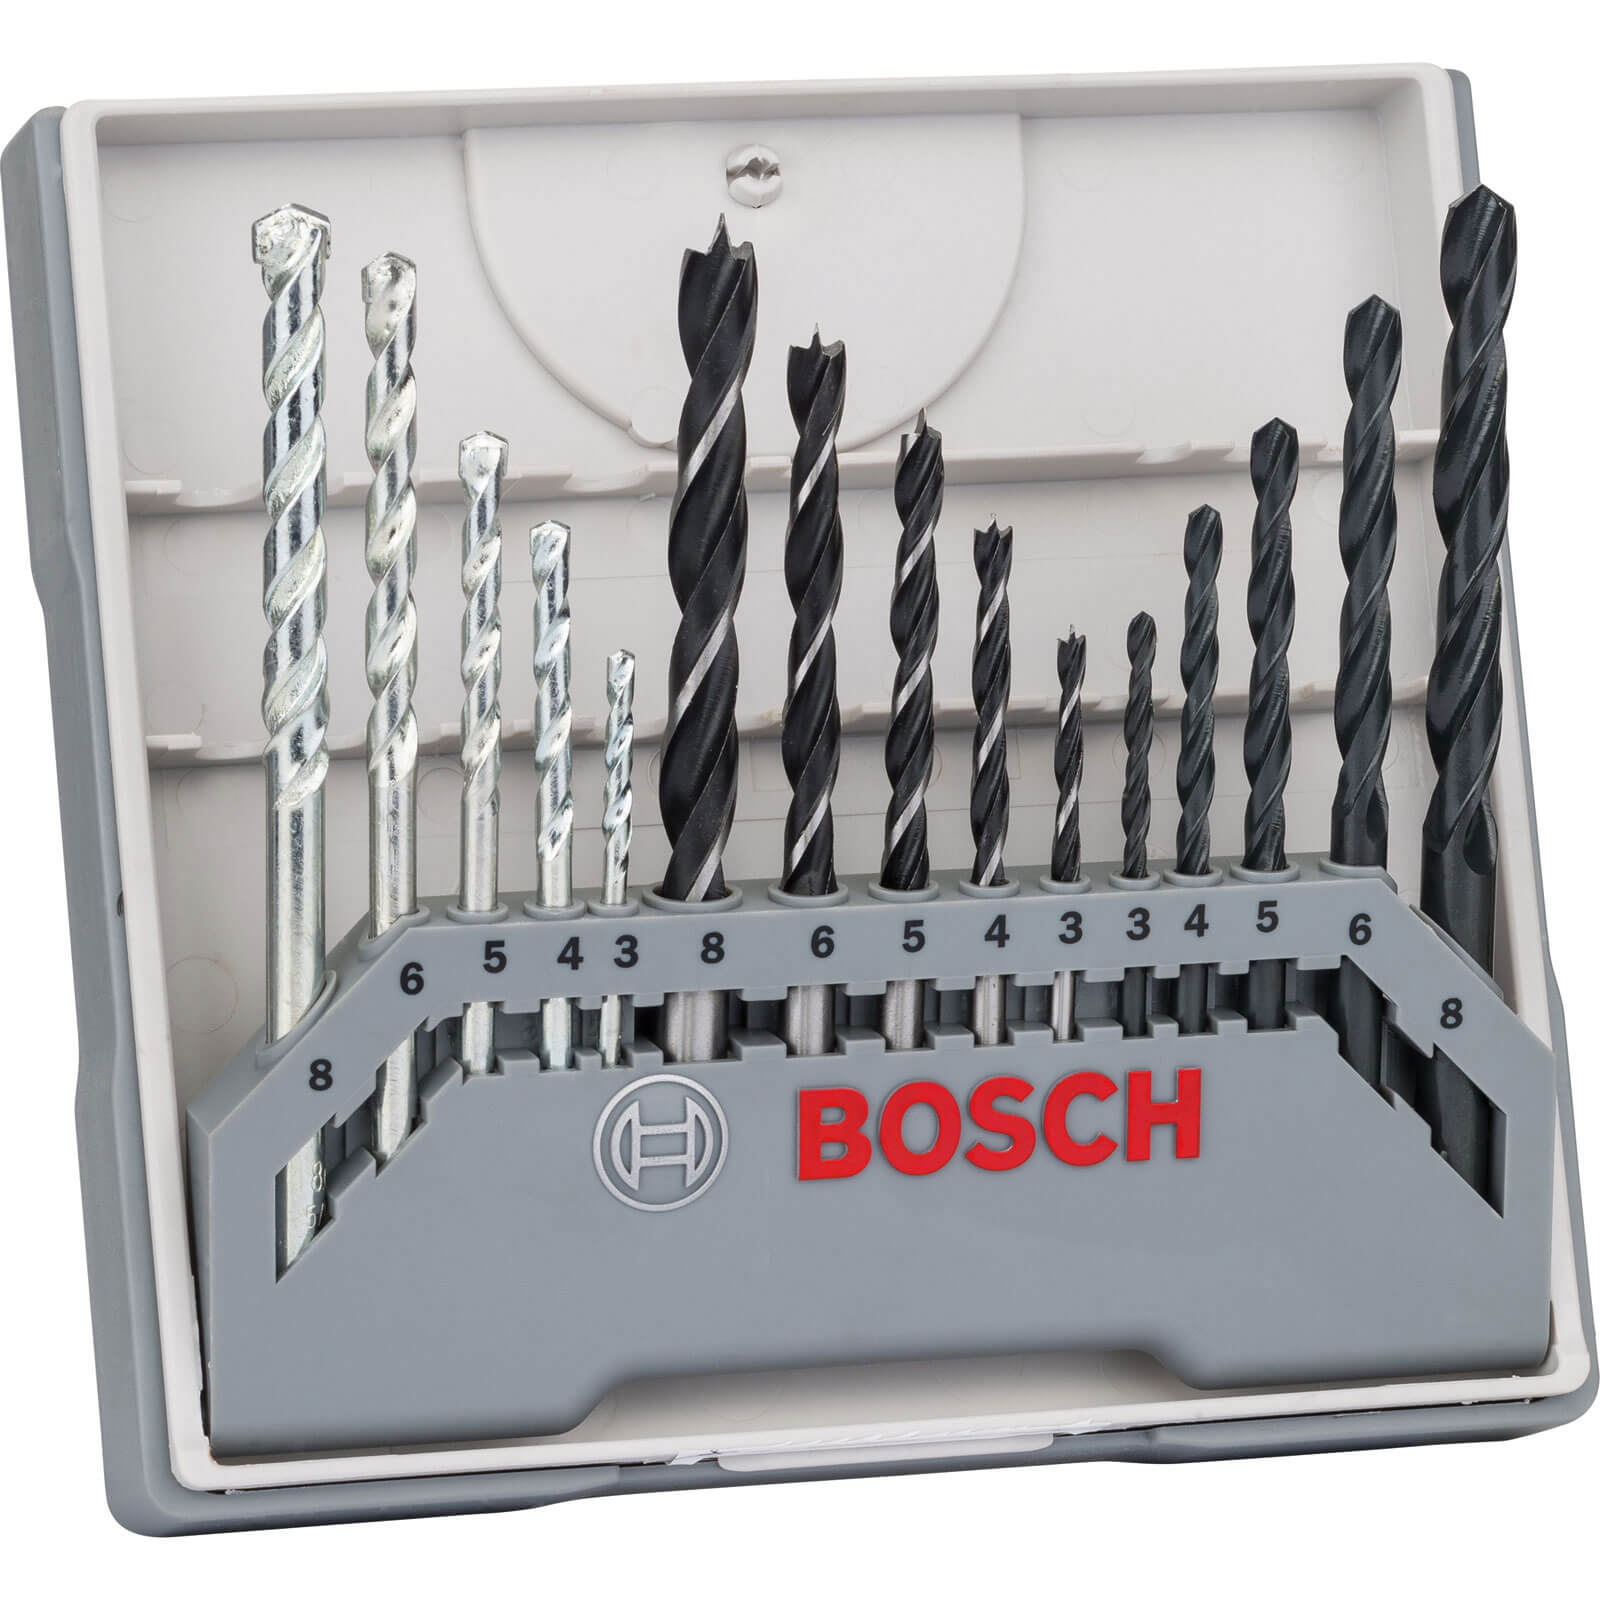 Image of Bosch 15 Piece Mixed Drill Bit Set